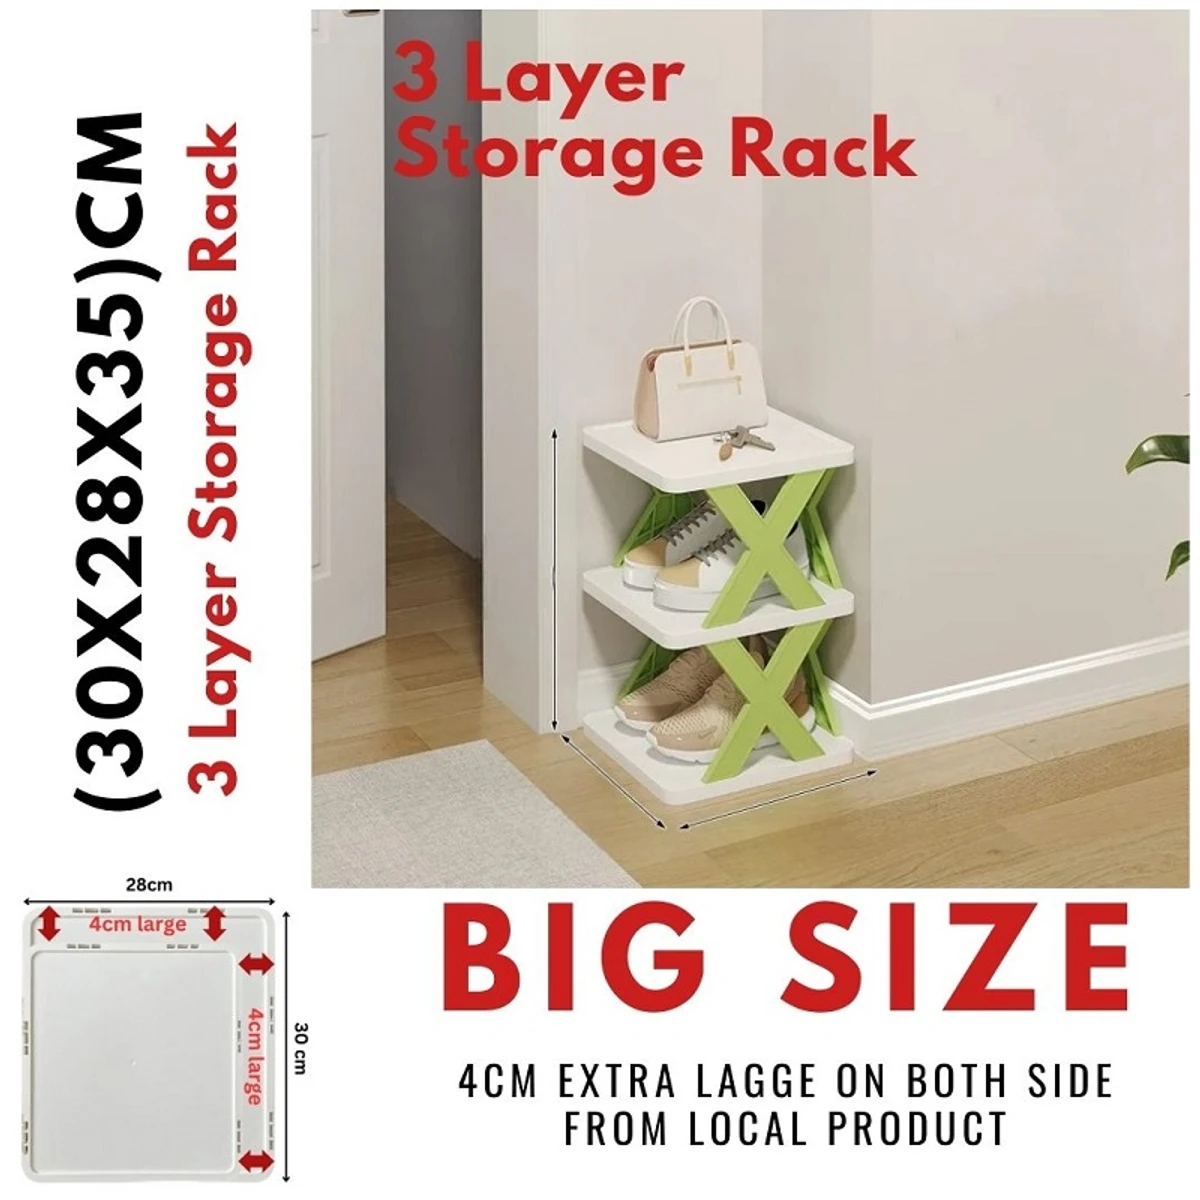 3 layer Multifunctional Shoe Organizer Rack